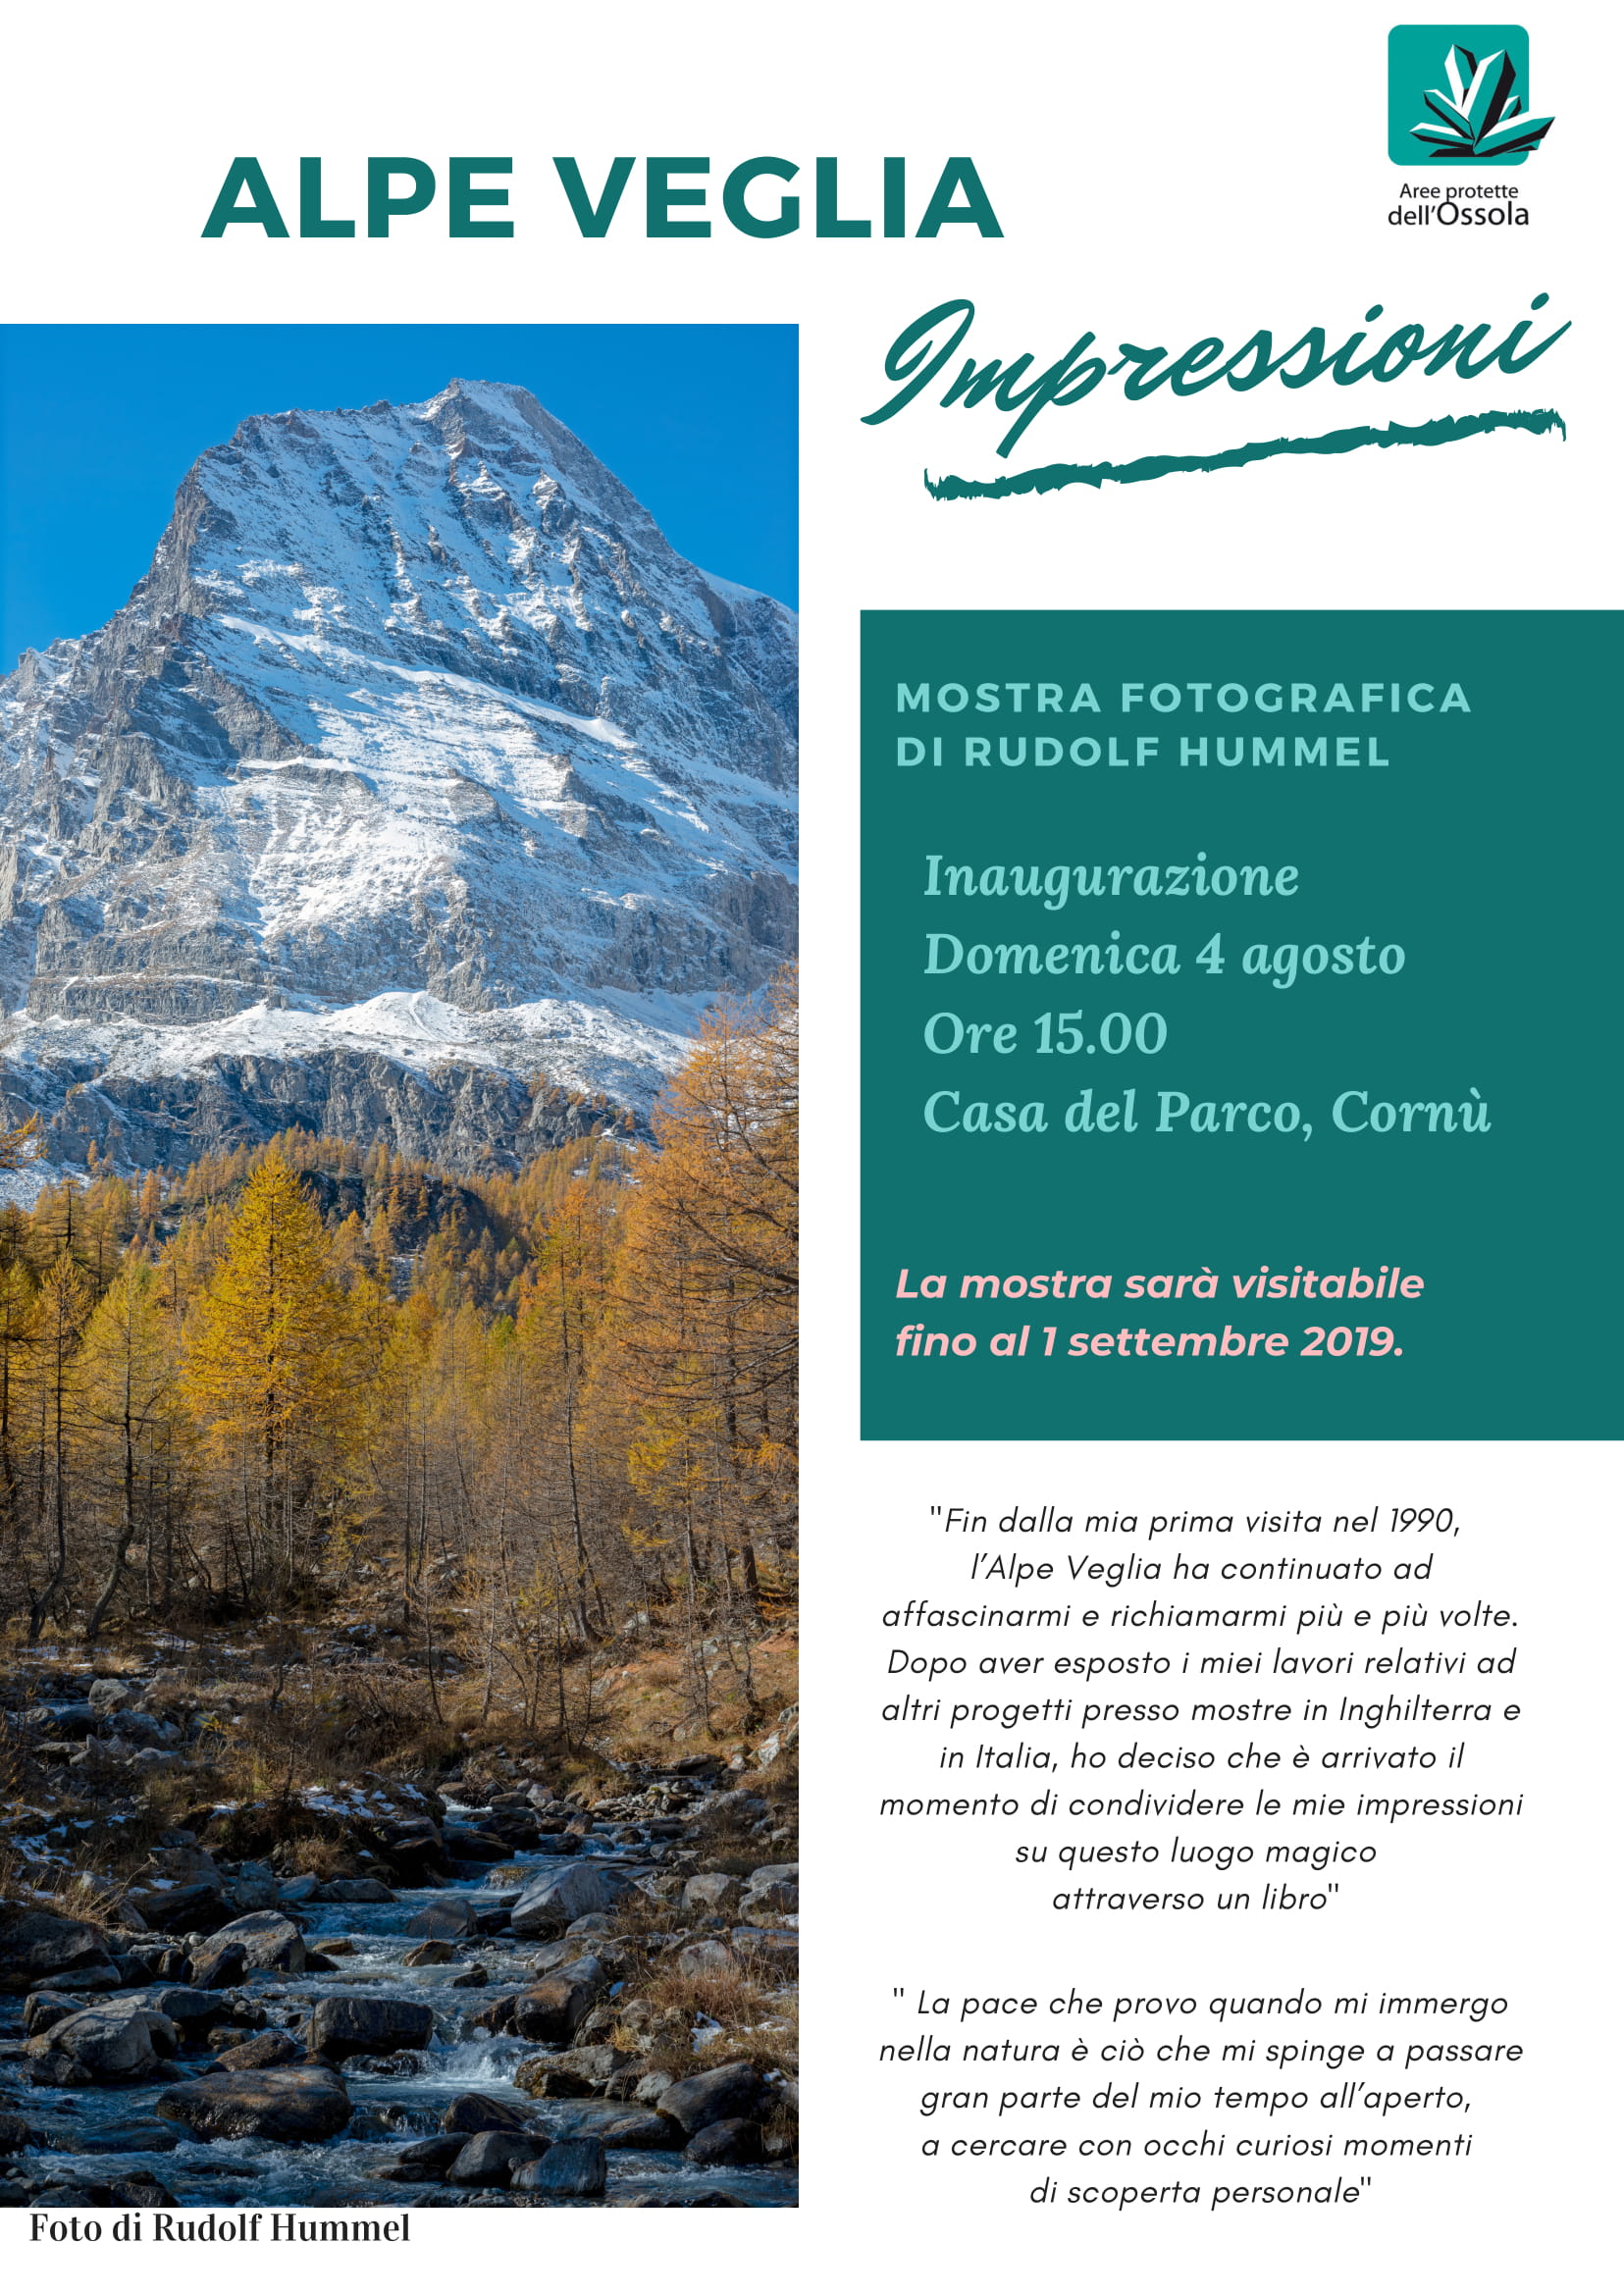 Mostra fotografica "Alpe Veglia - Impressioni"